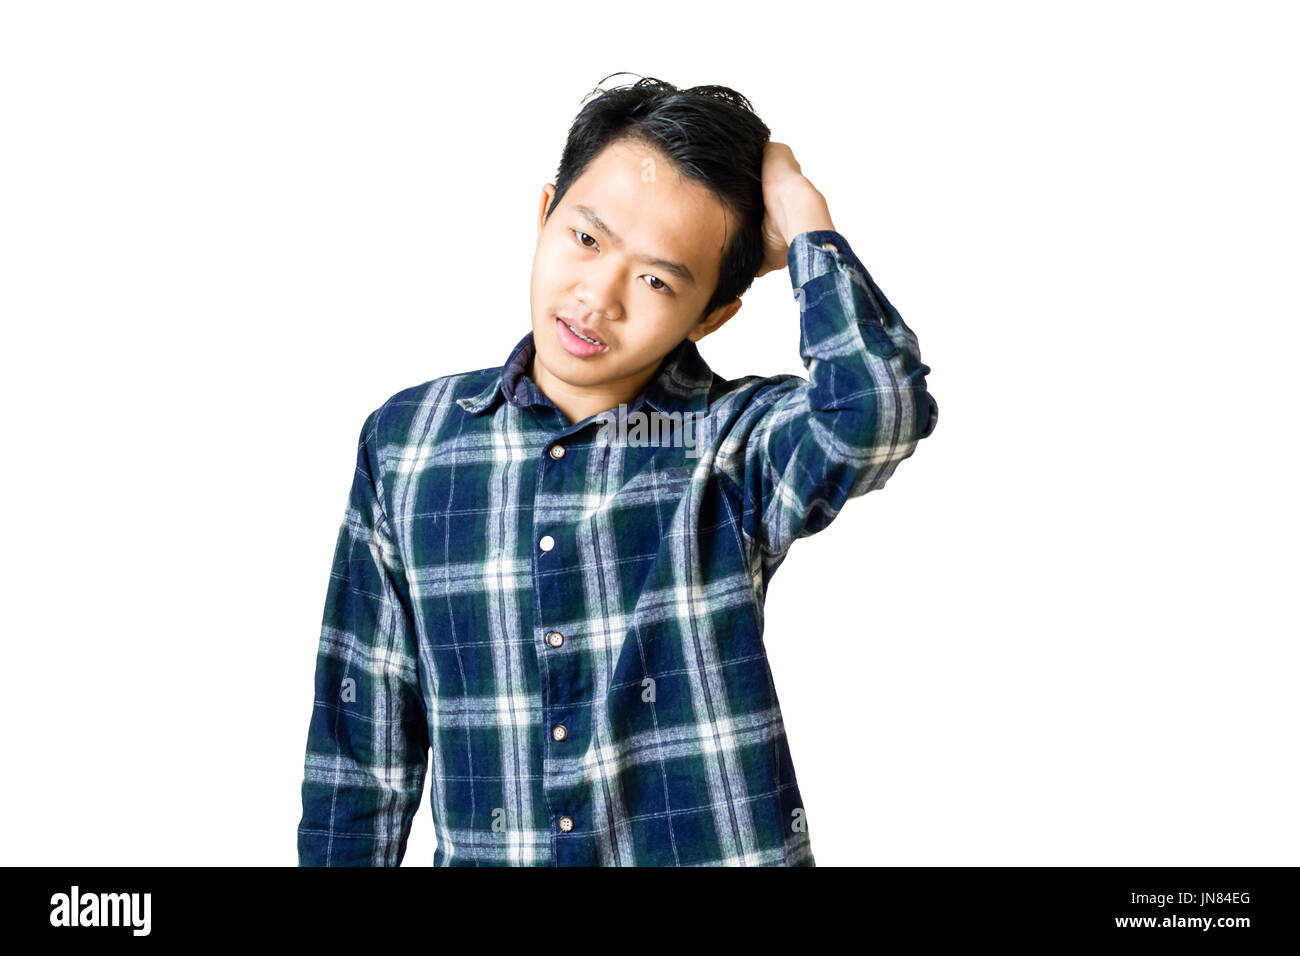 Ritratto di un giovane asian business man rendendo (i capelli) liscia e lucida, tipicamente mediante applicazione di pressione o di umidità. Isolato su bianco backgr Foto Stock